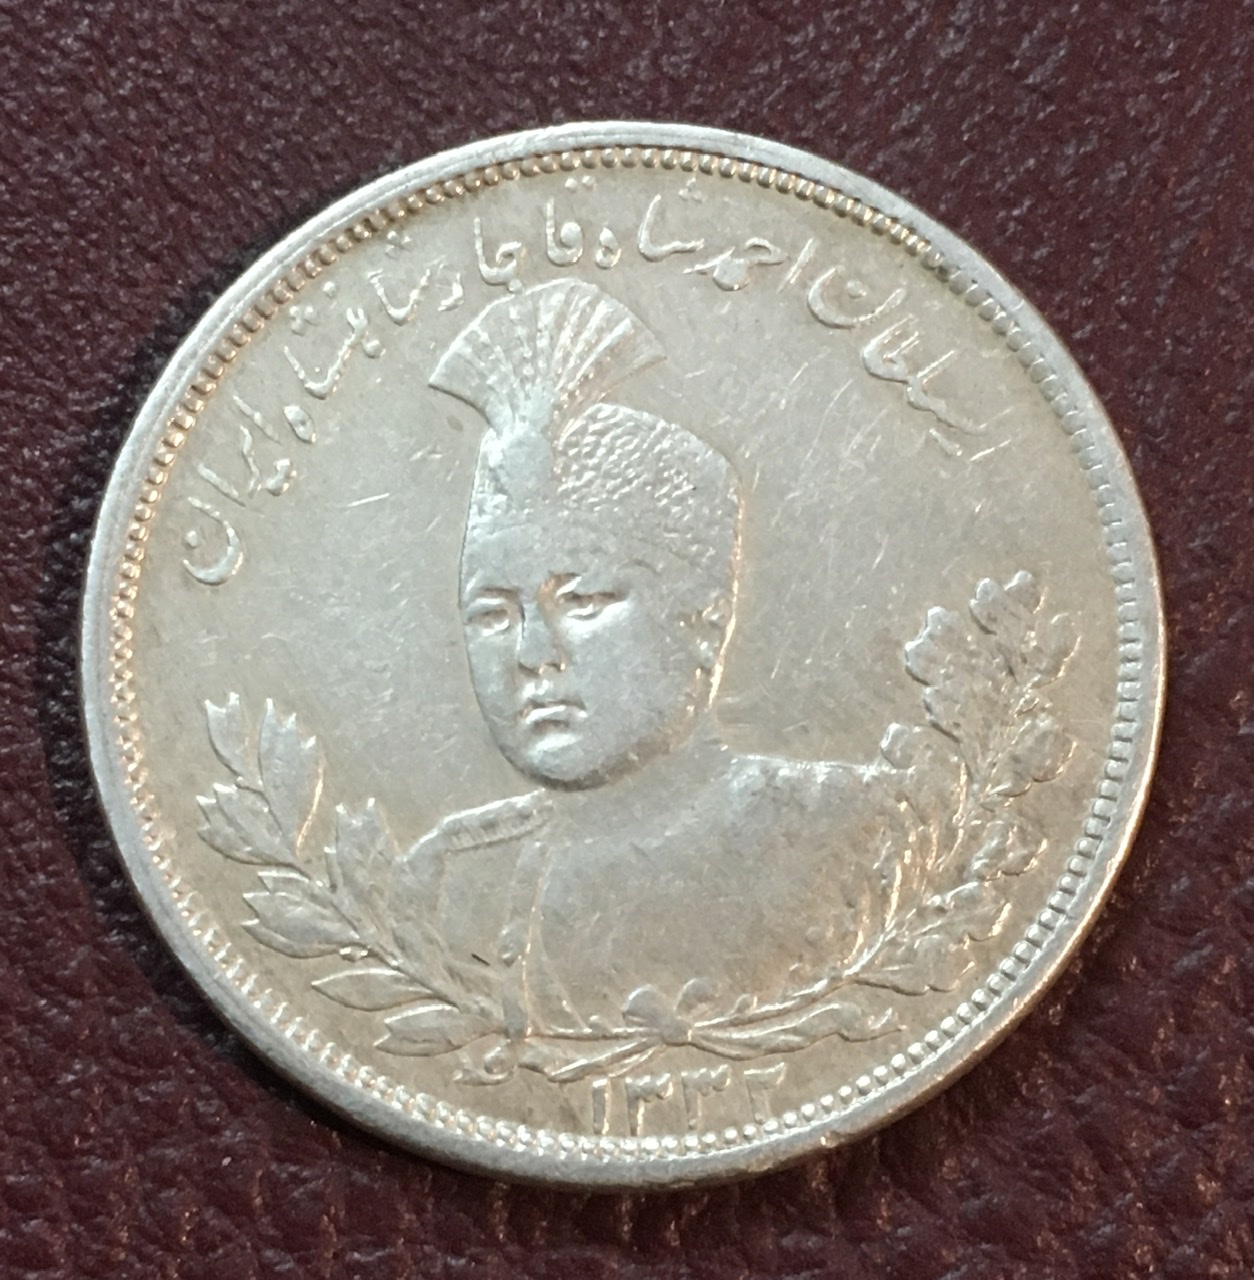 سکه نقره احمد شاه